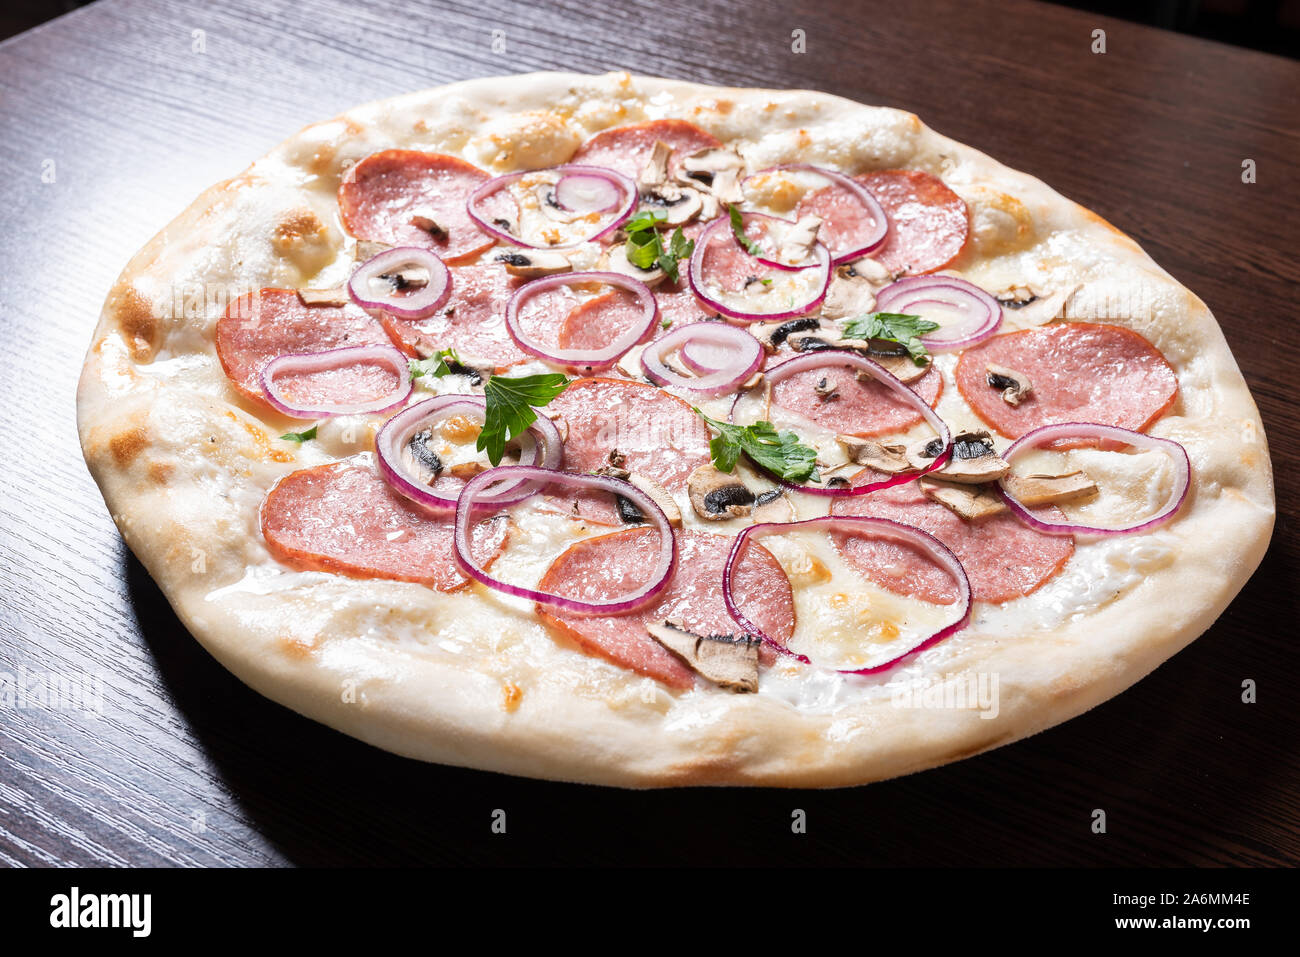 Billige Pizza mit Salami, Zwiebeln und Pilze. Stockfoto